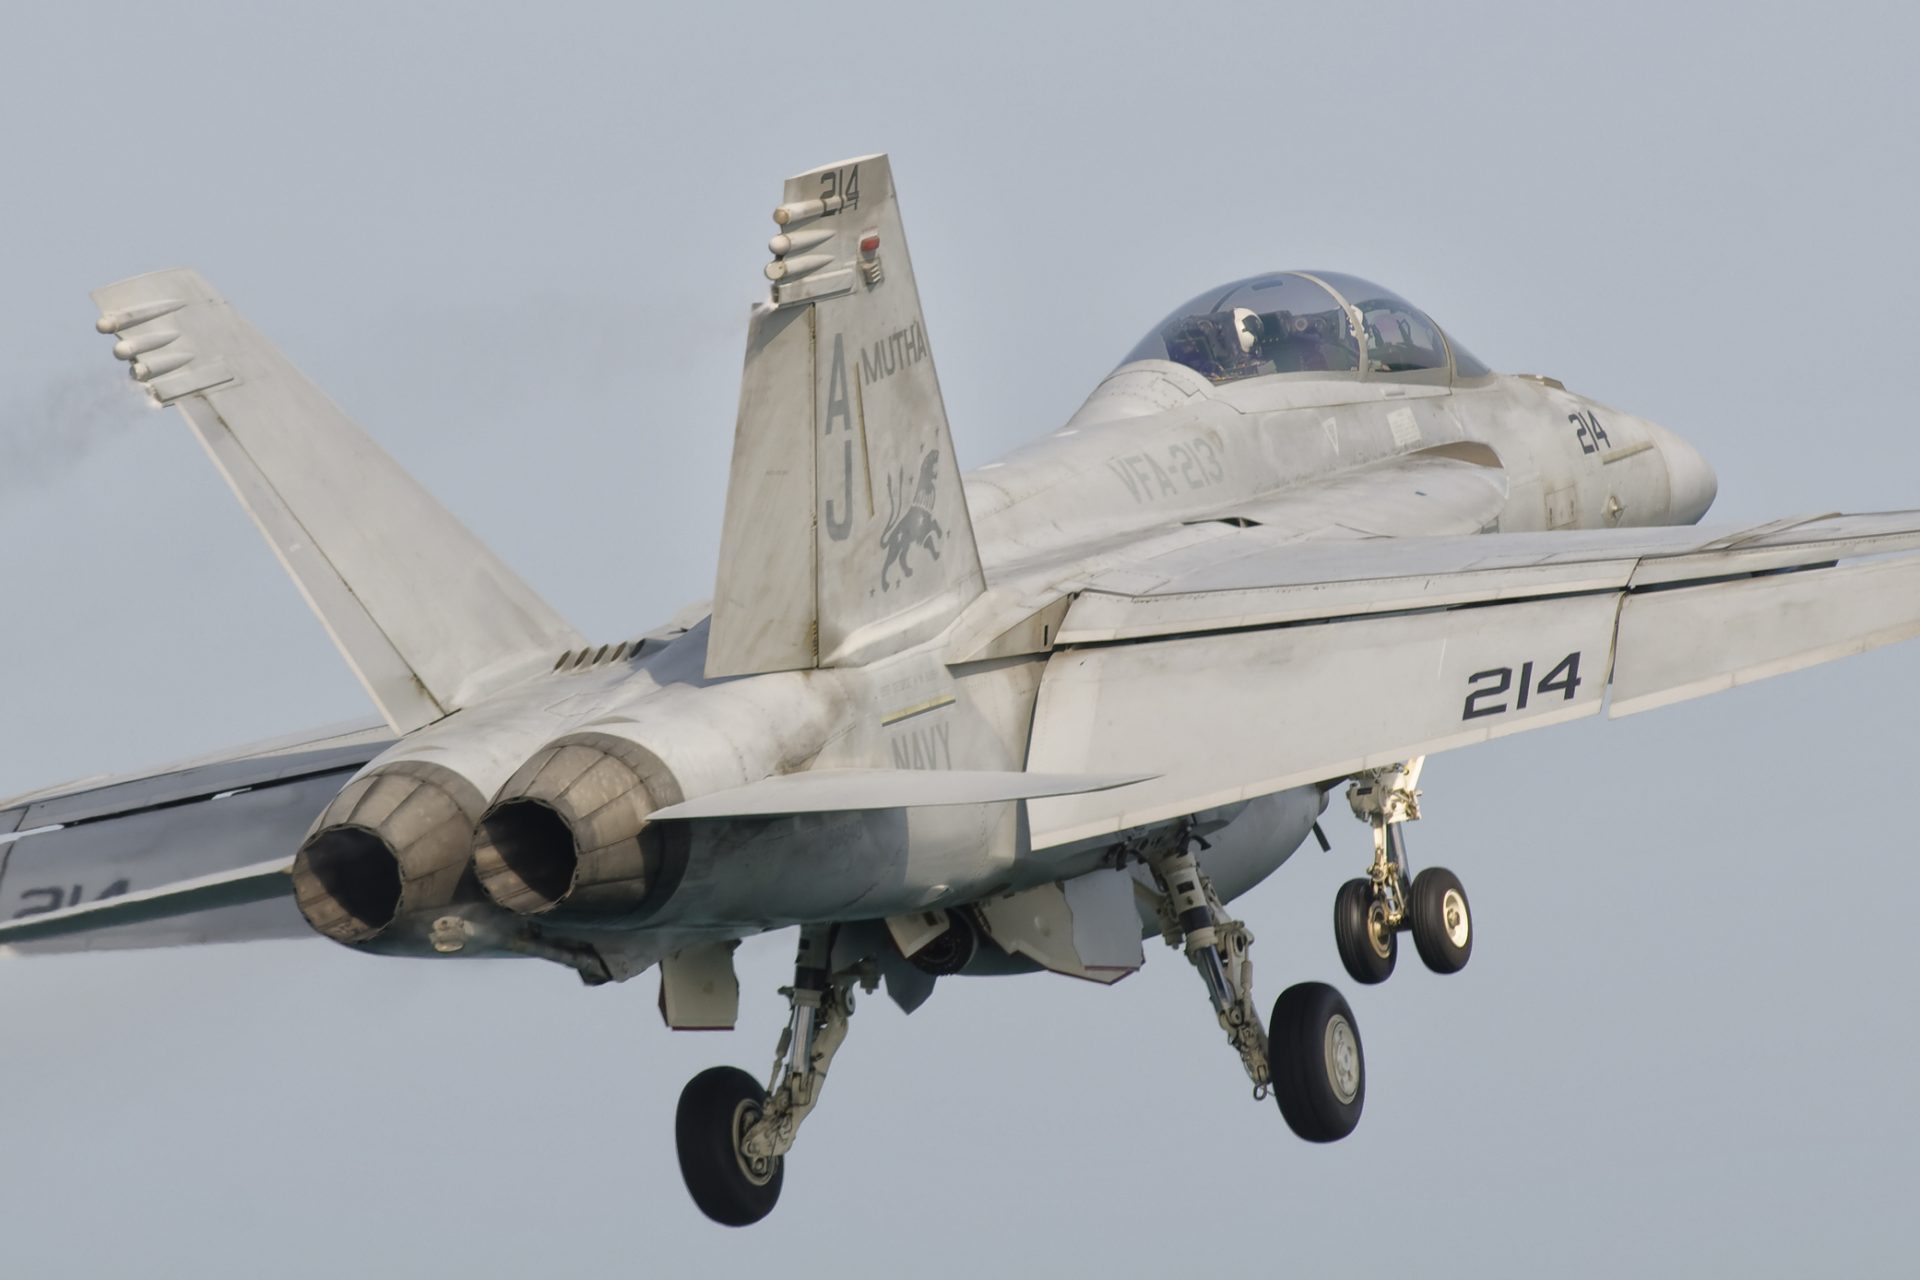 Welk nut hebben de F-16's die Nederland aan Oekraïne helpt leveren?